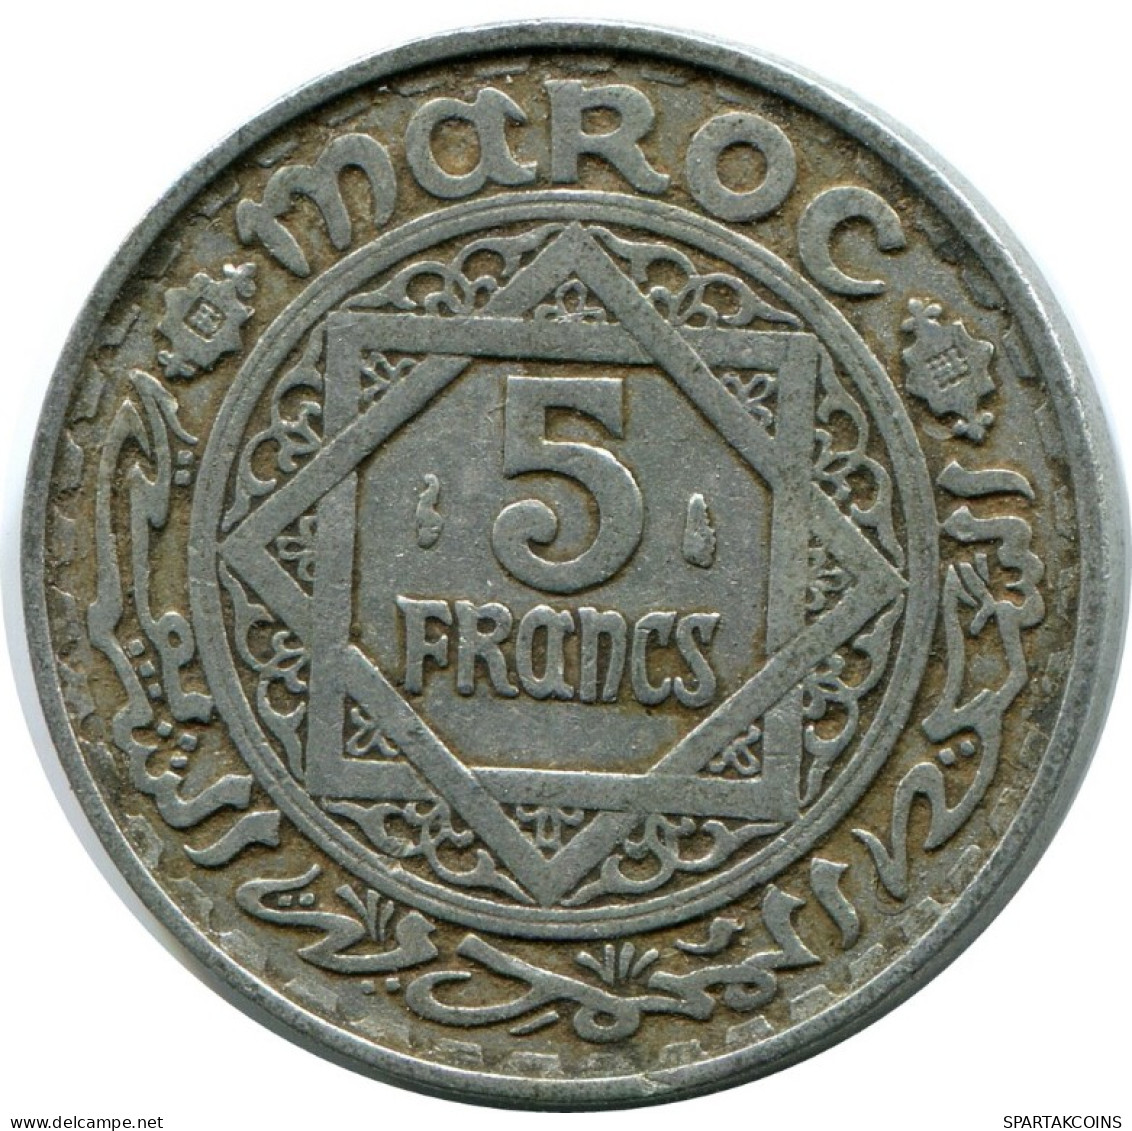 5 FRANCS 1951 MOROCCO Islamisch Münze #AH649.3.D.A - Maroc